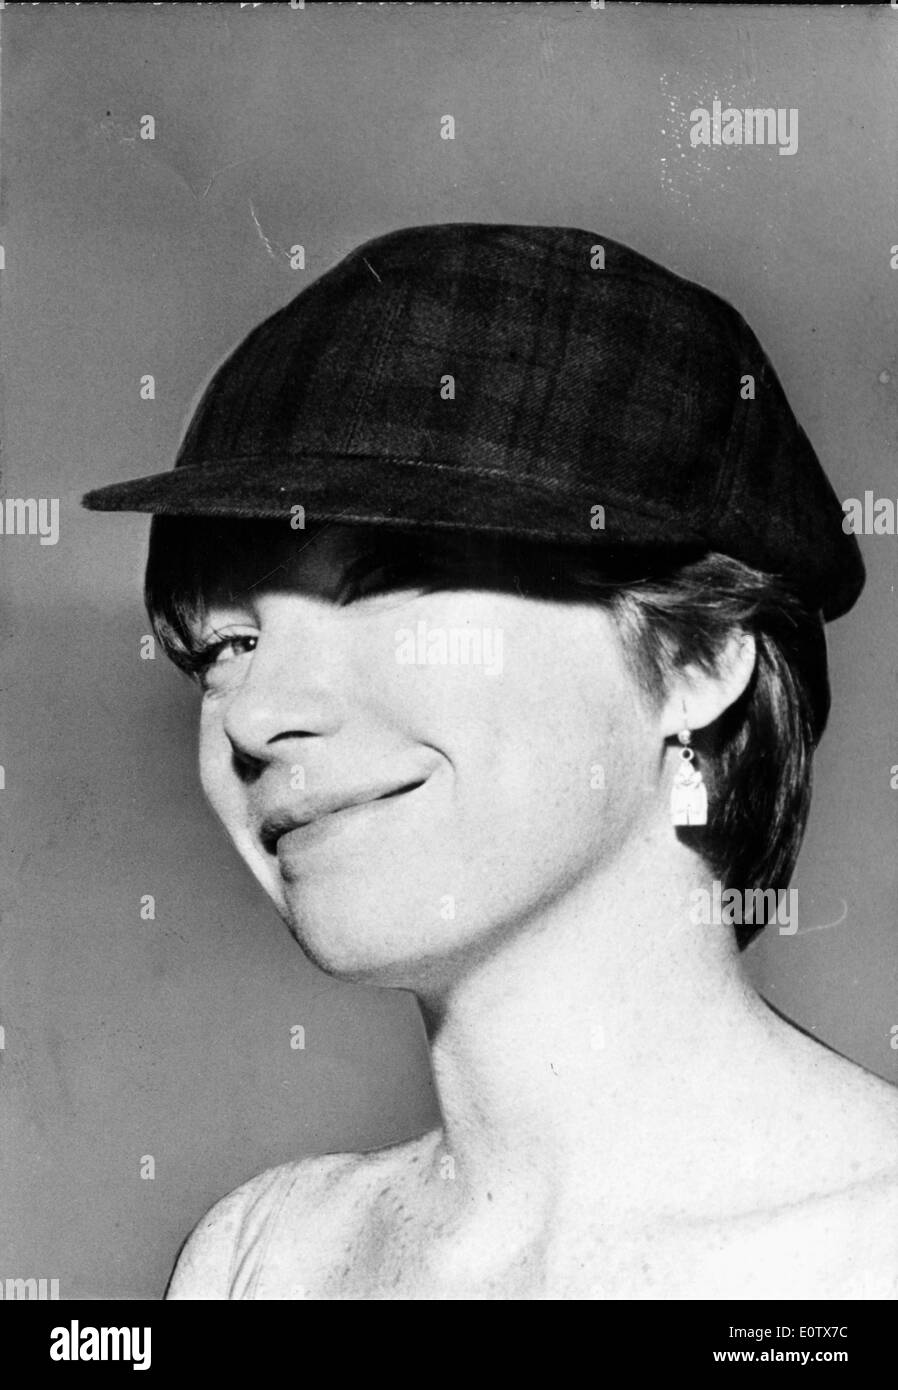 Portrait de l'actrice Shirley MacLaine la modélisation d'un hat Banque D'Images